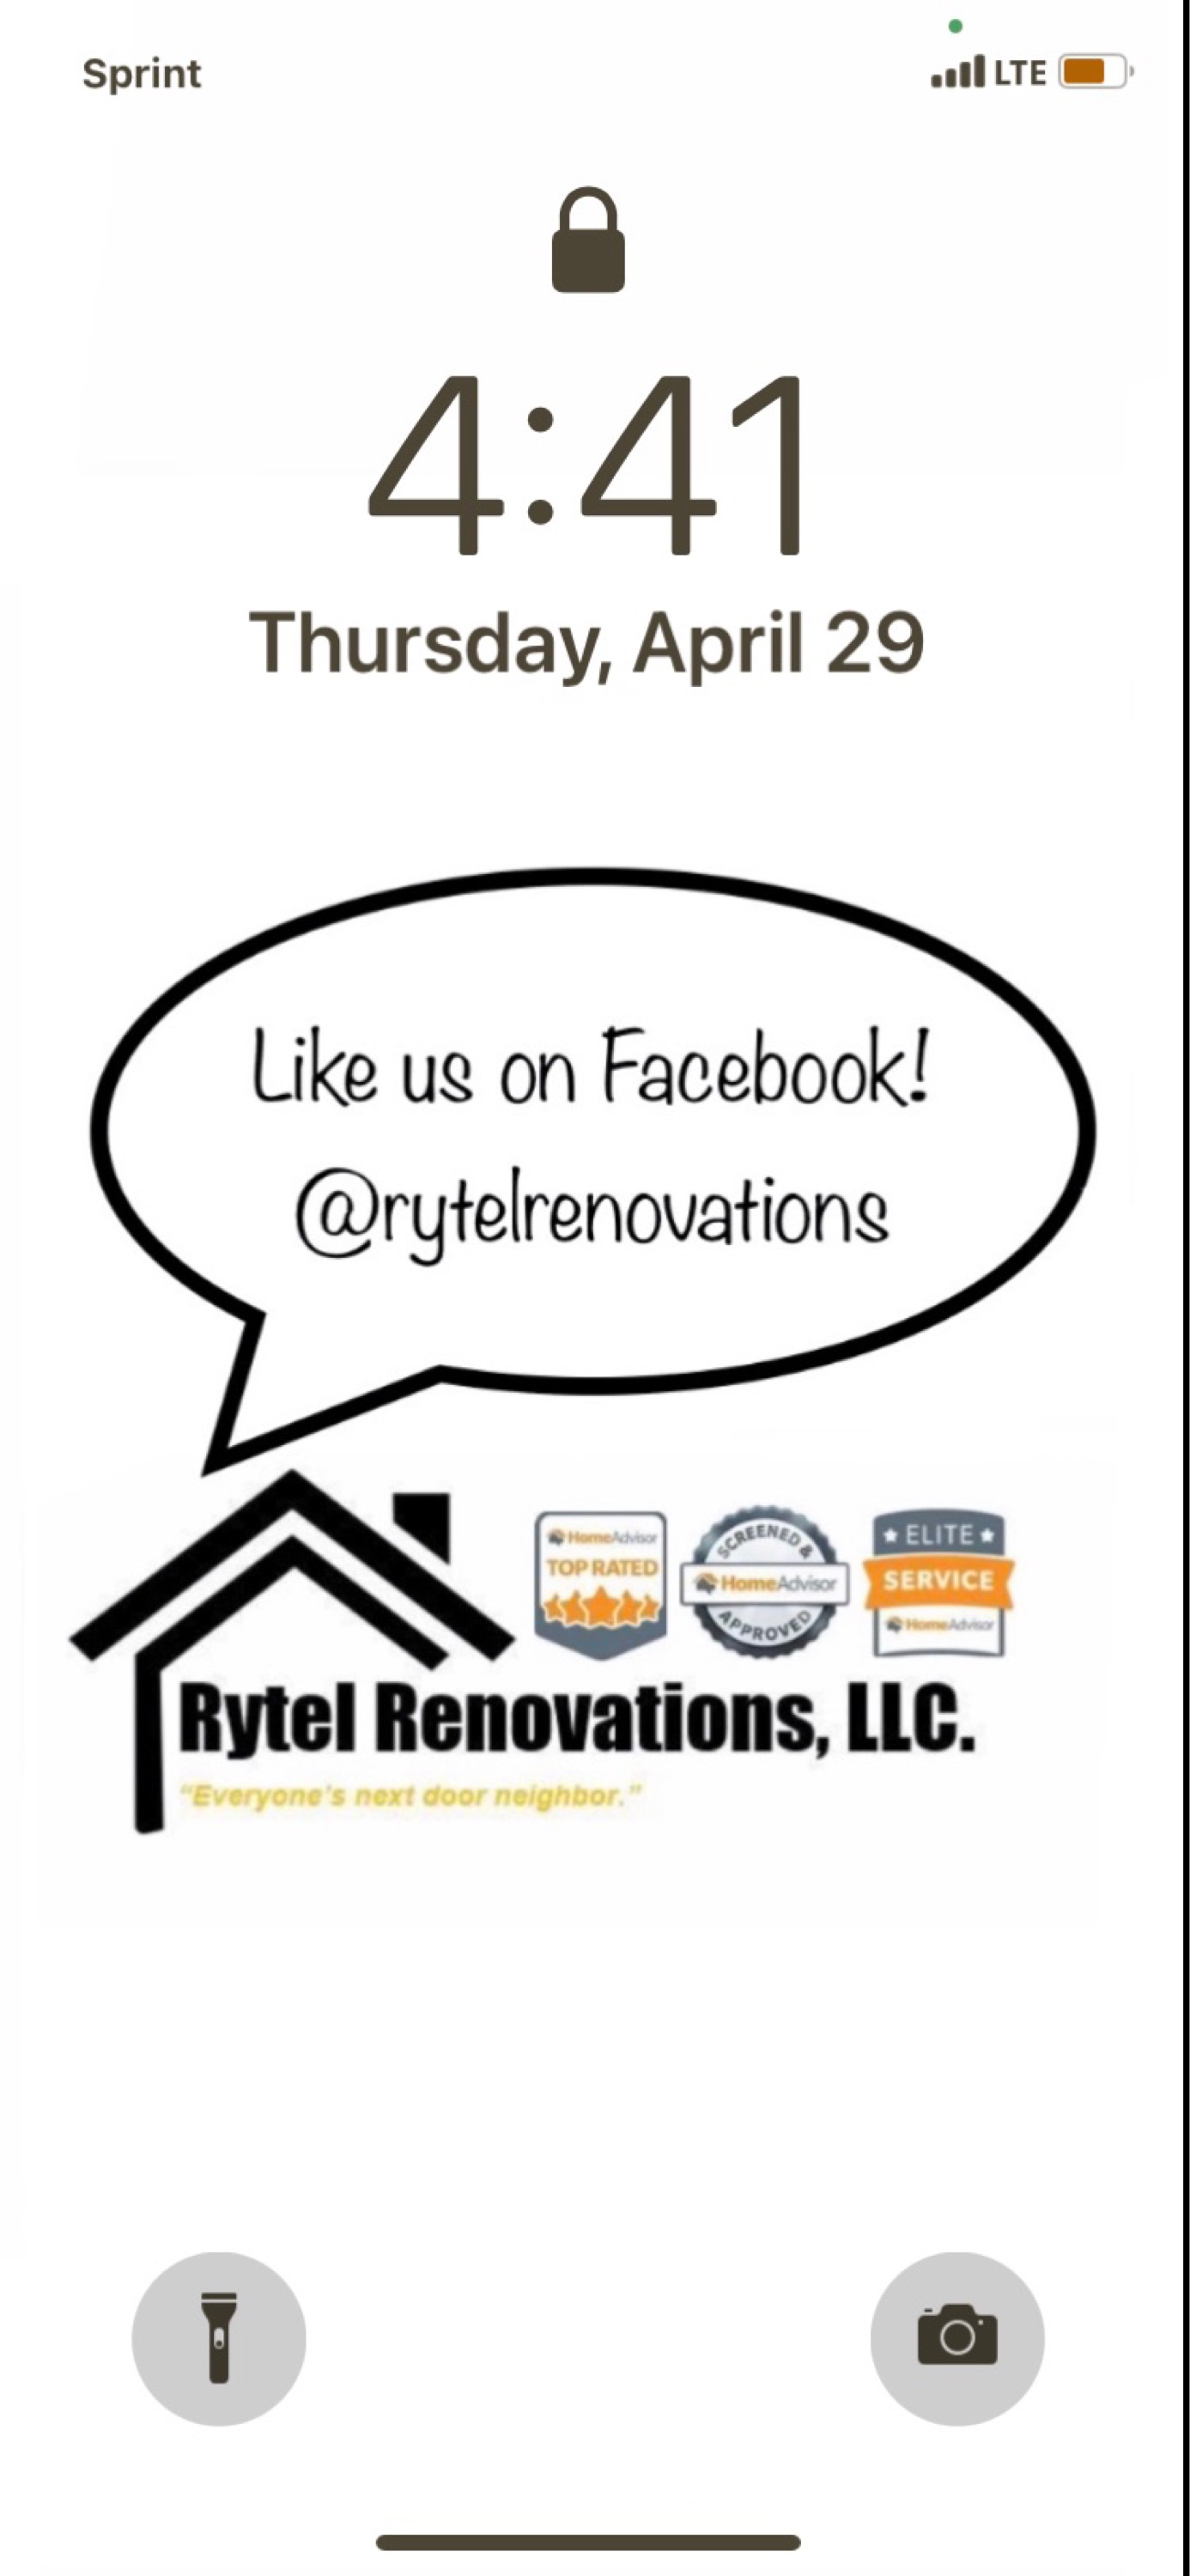 Rytel Renovations Logo